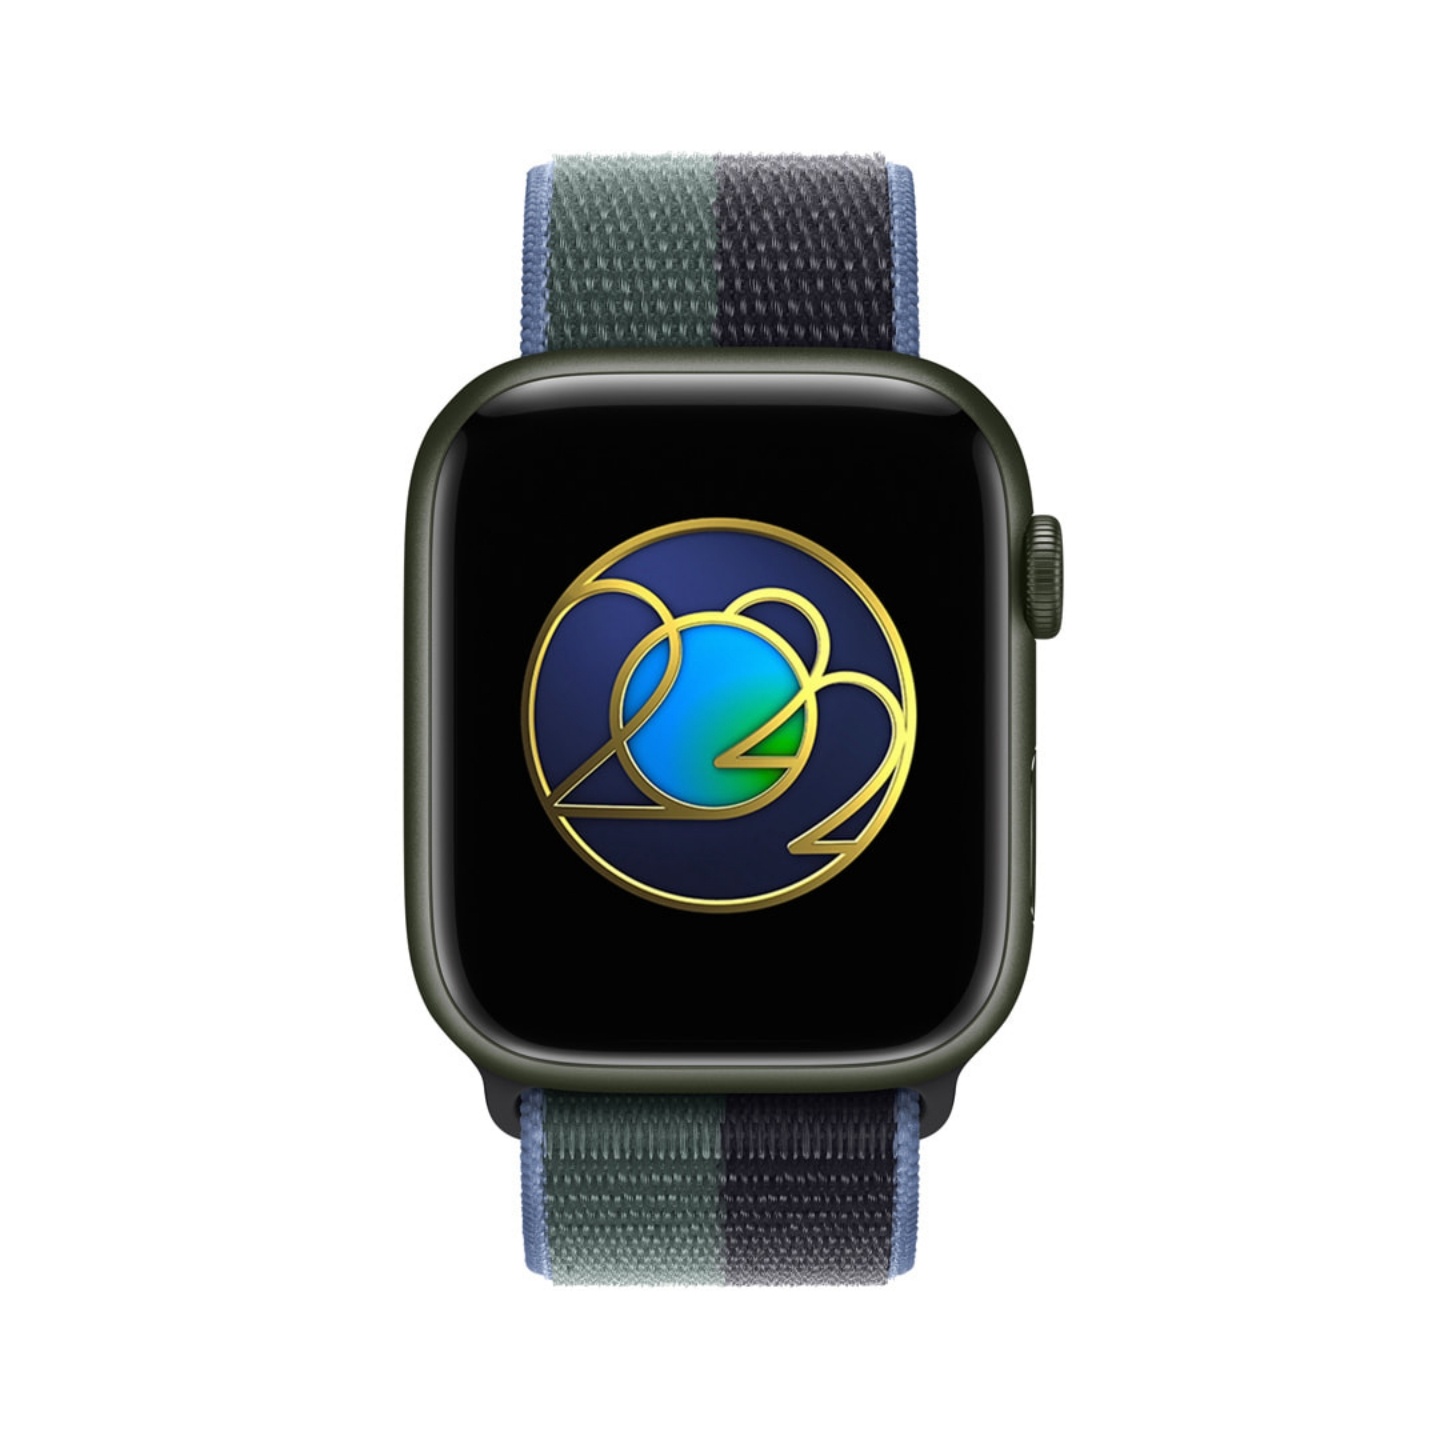 慶祝世界地球日！運動 30 分鐘就能在 Apple Watch 上獲得 iMessage 貼紙驚喜